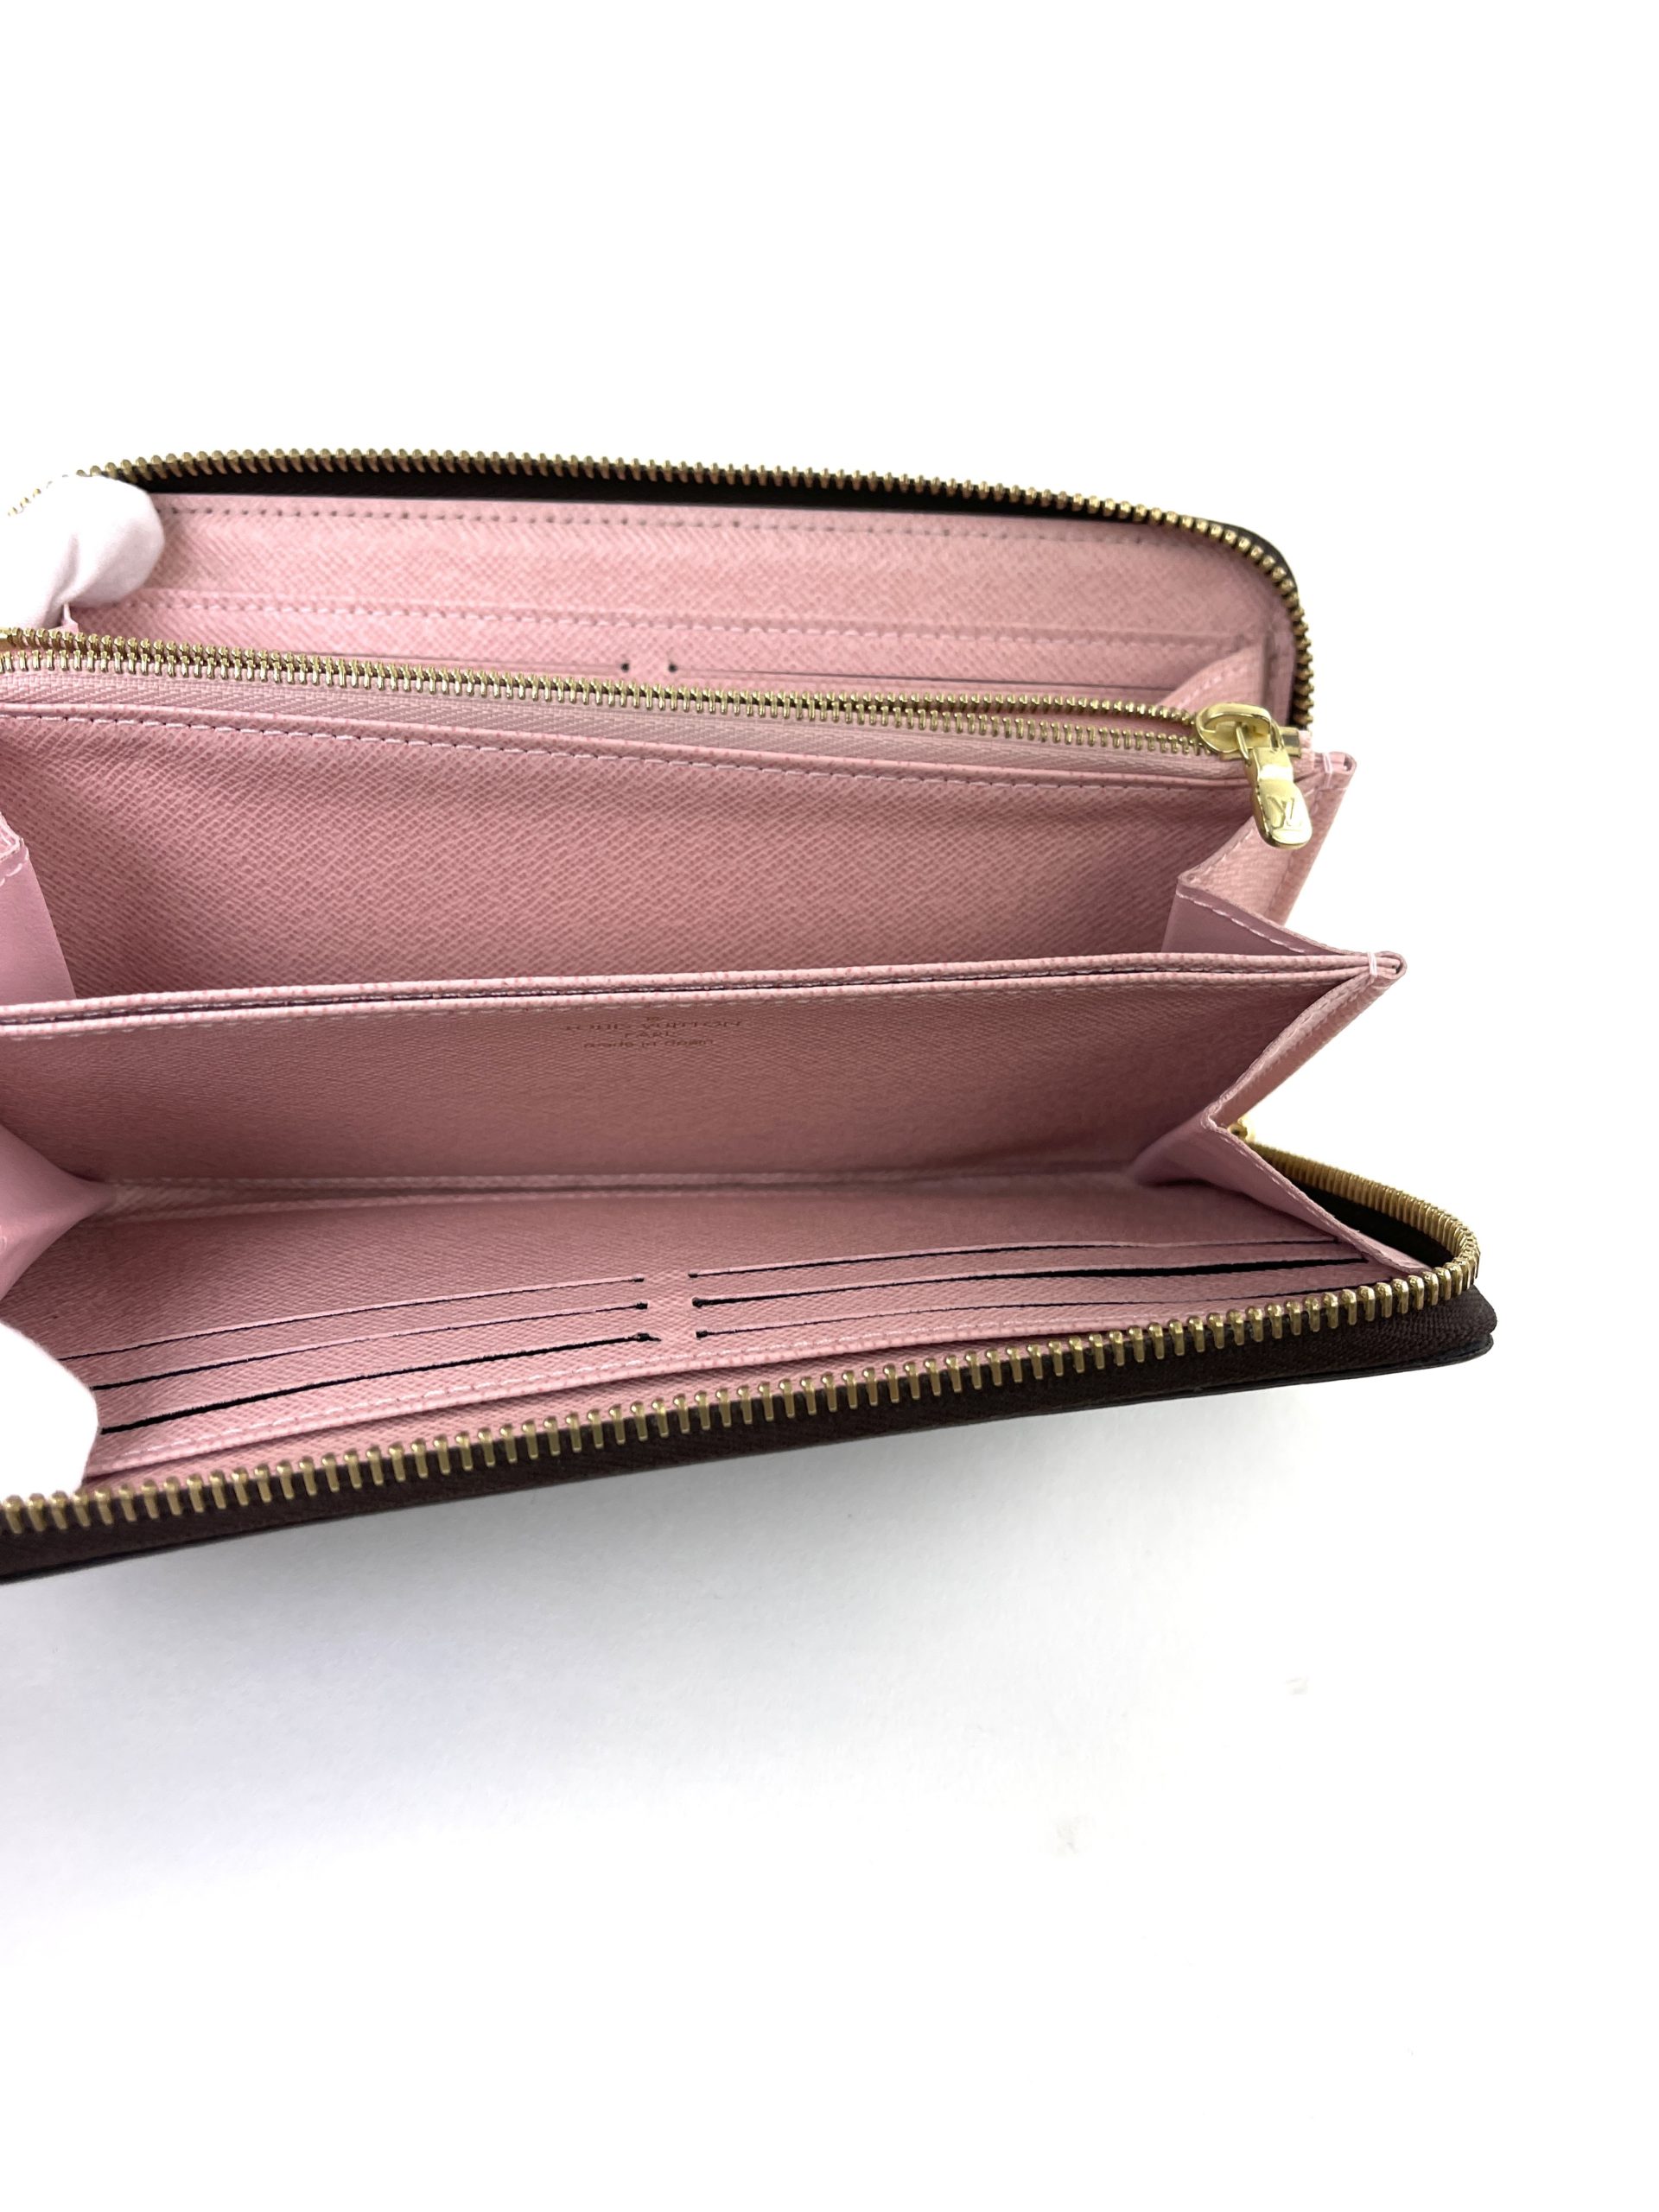 At Auction: Louis Vuitton, Louis Vuitton Rose Ballerine Vivienne Long Wallet